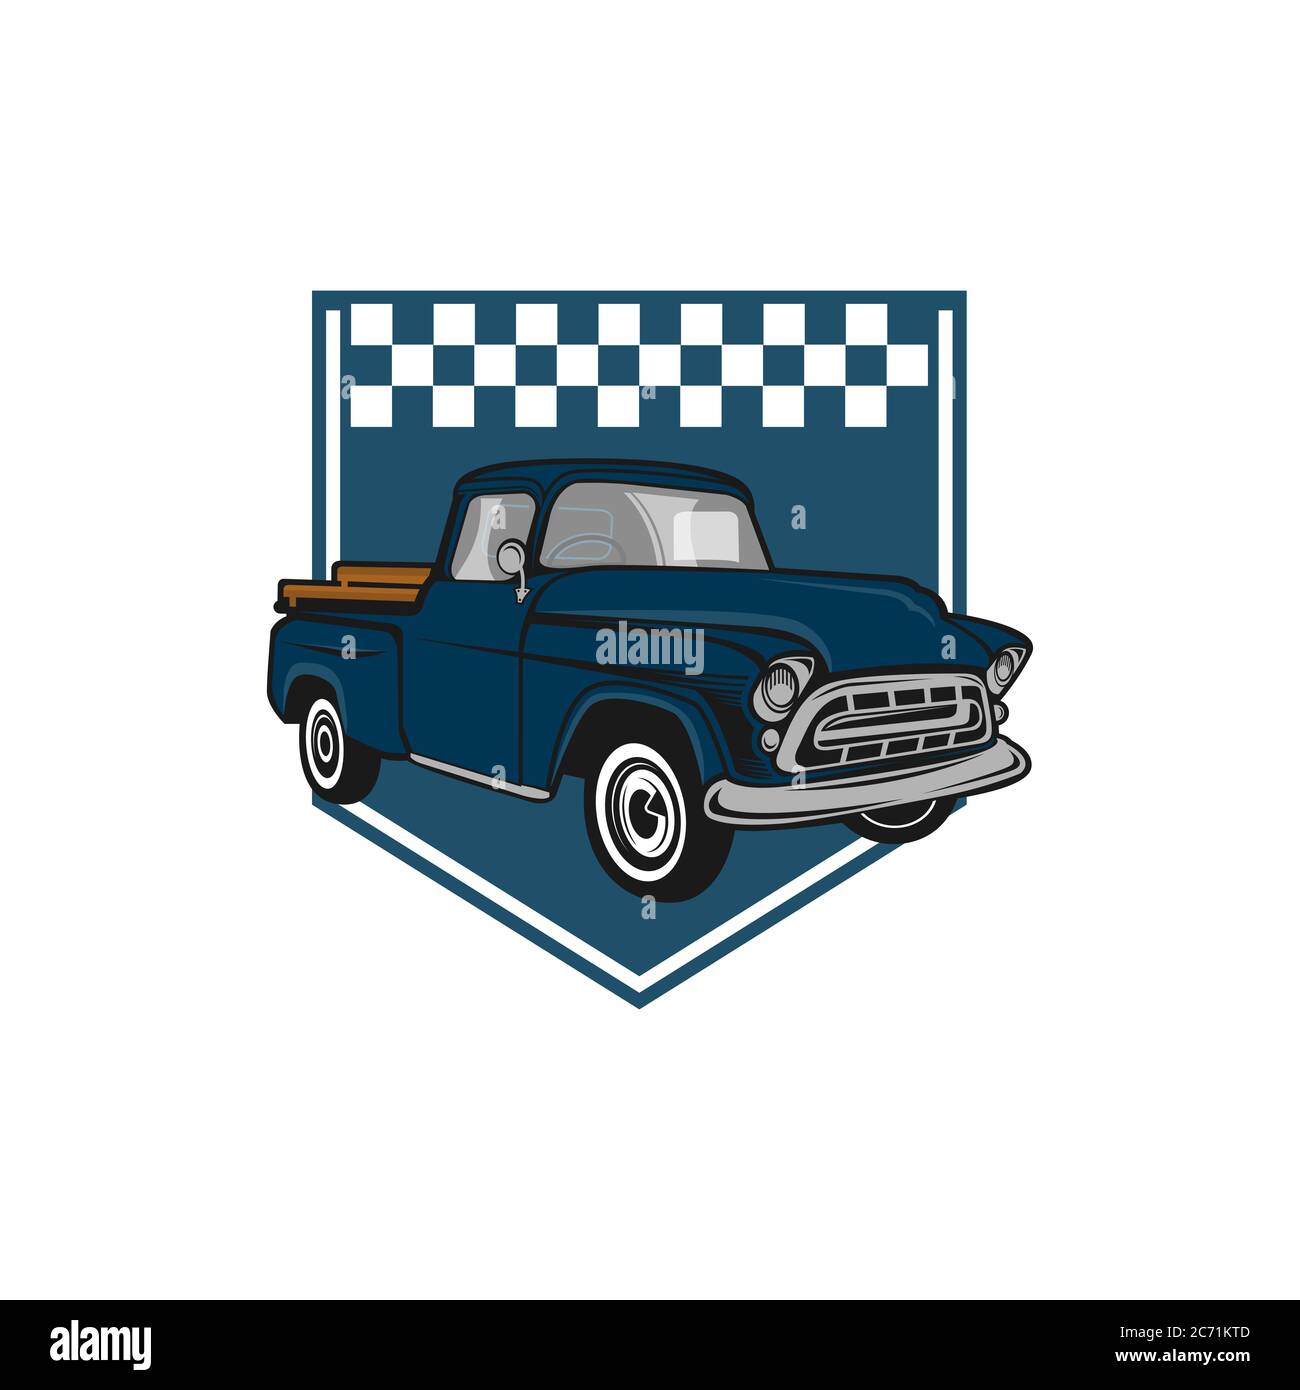 Illustrazione di un veicolo classico o logo di un'auto vintage o retrò. stile vintage.EPS 10 Illustrazione Vettoriale